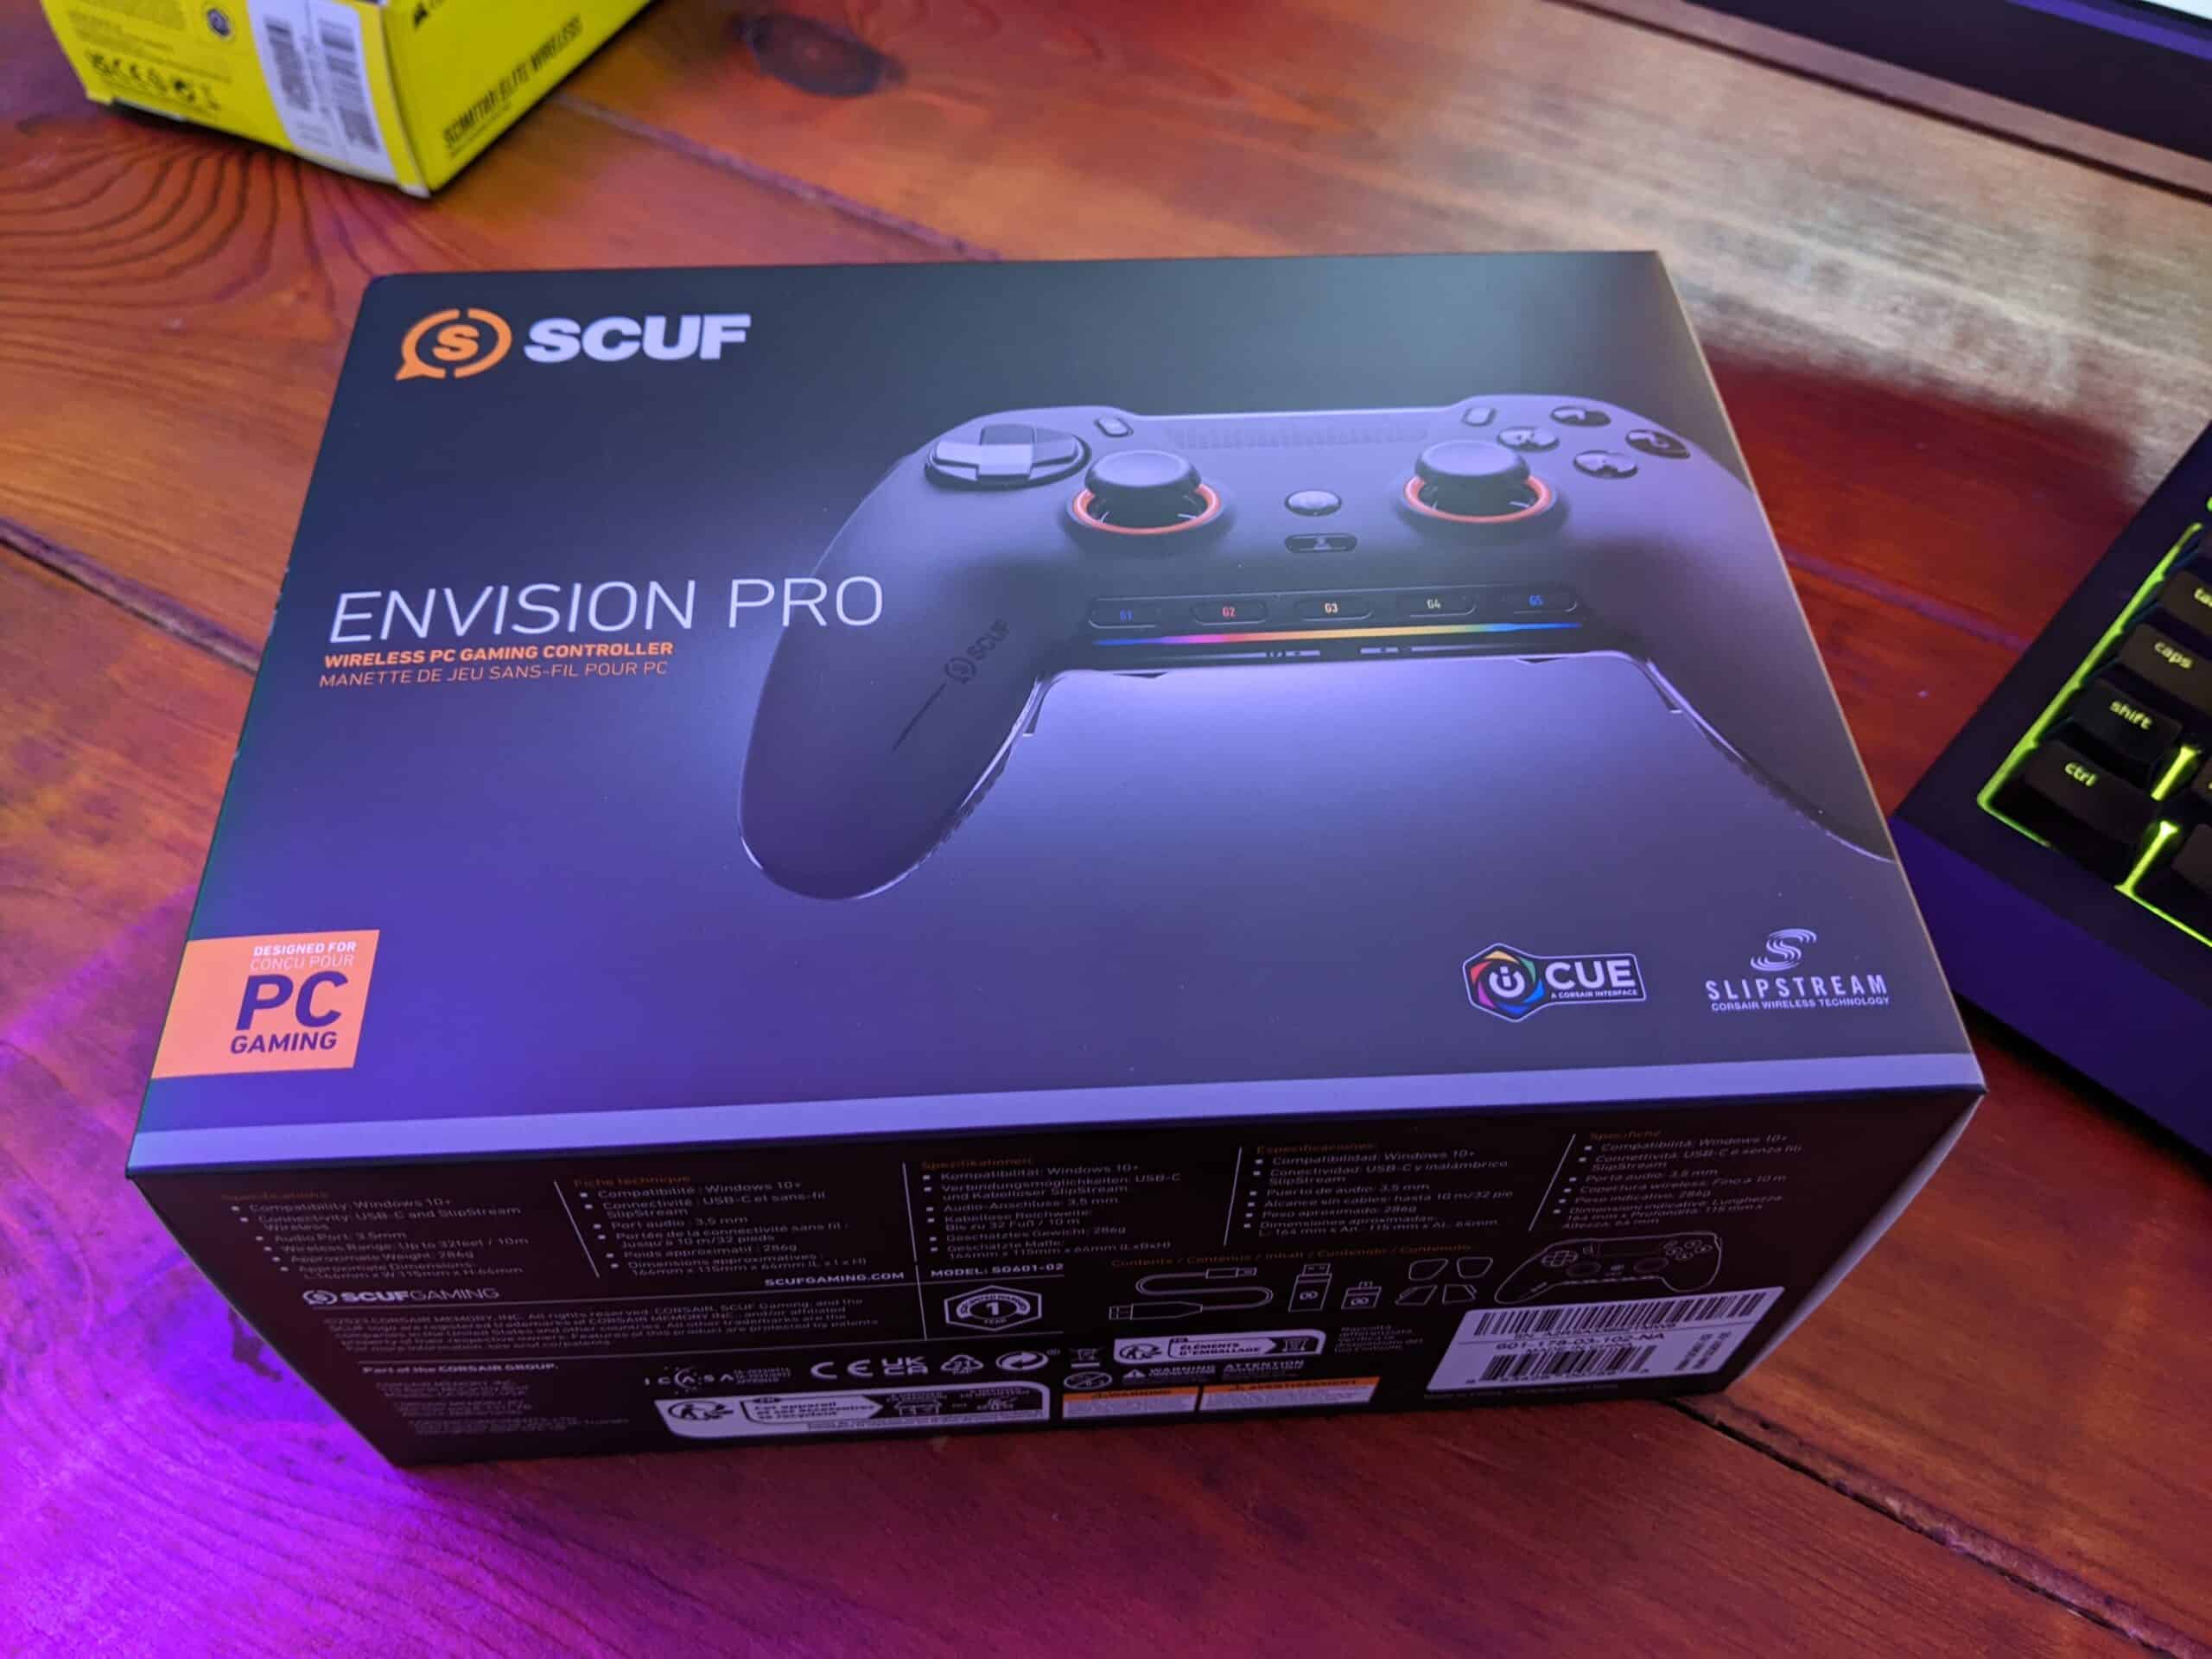 SCUF Envision Pro boxed